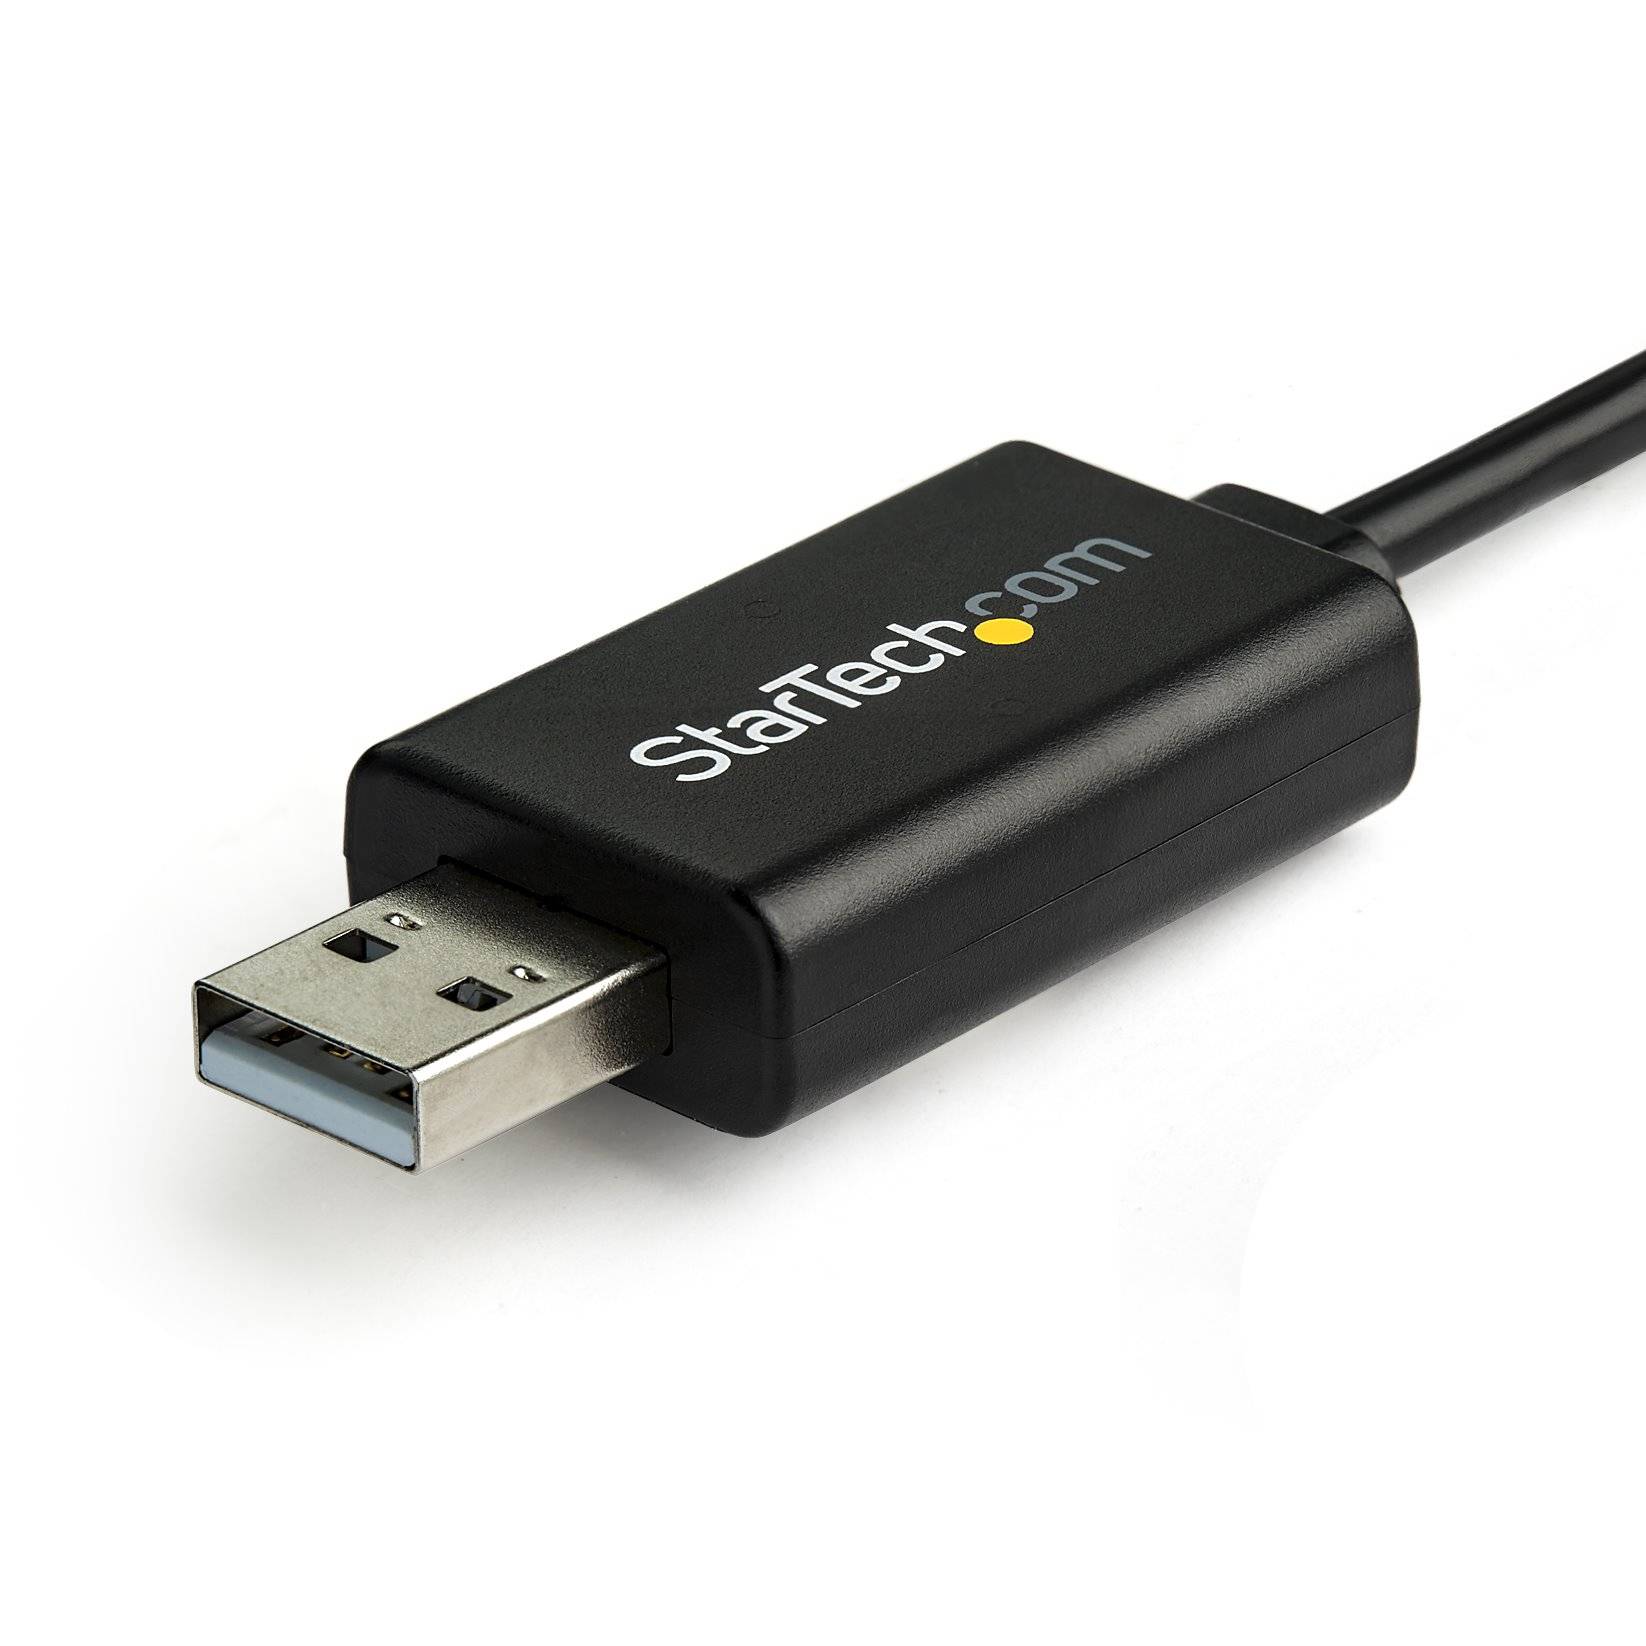 Rca Informatique - image du produit : CISCO USB CONSOLE CABLE USB TO RJ45 1.8M